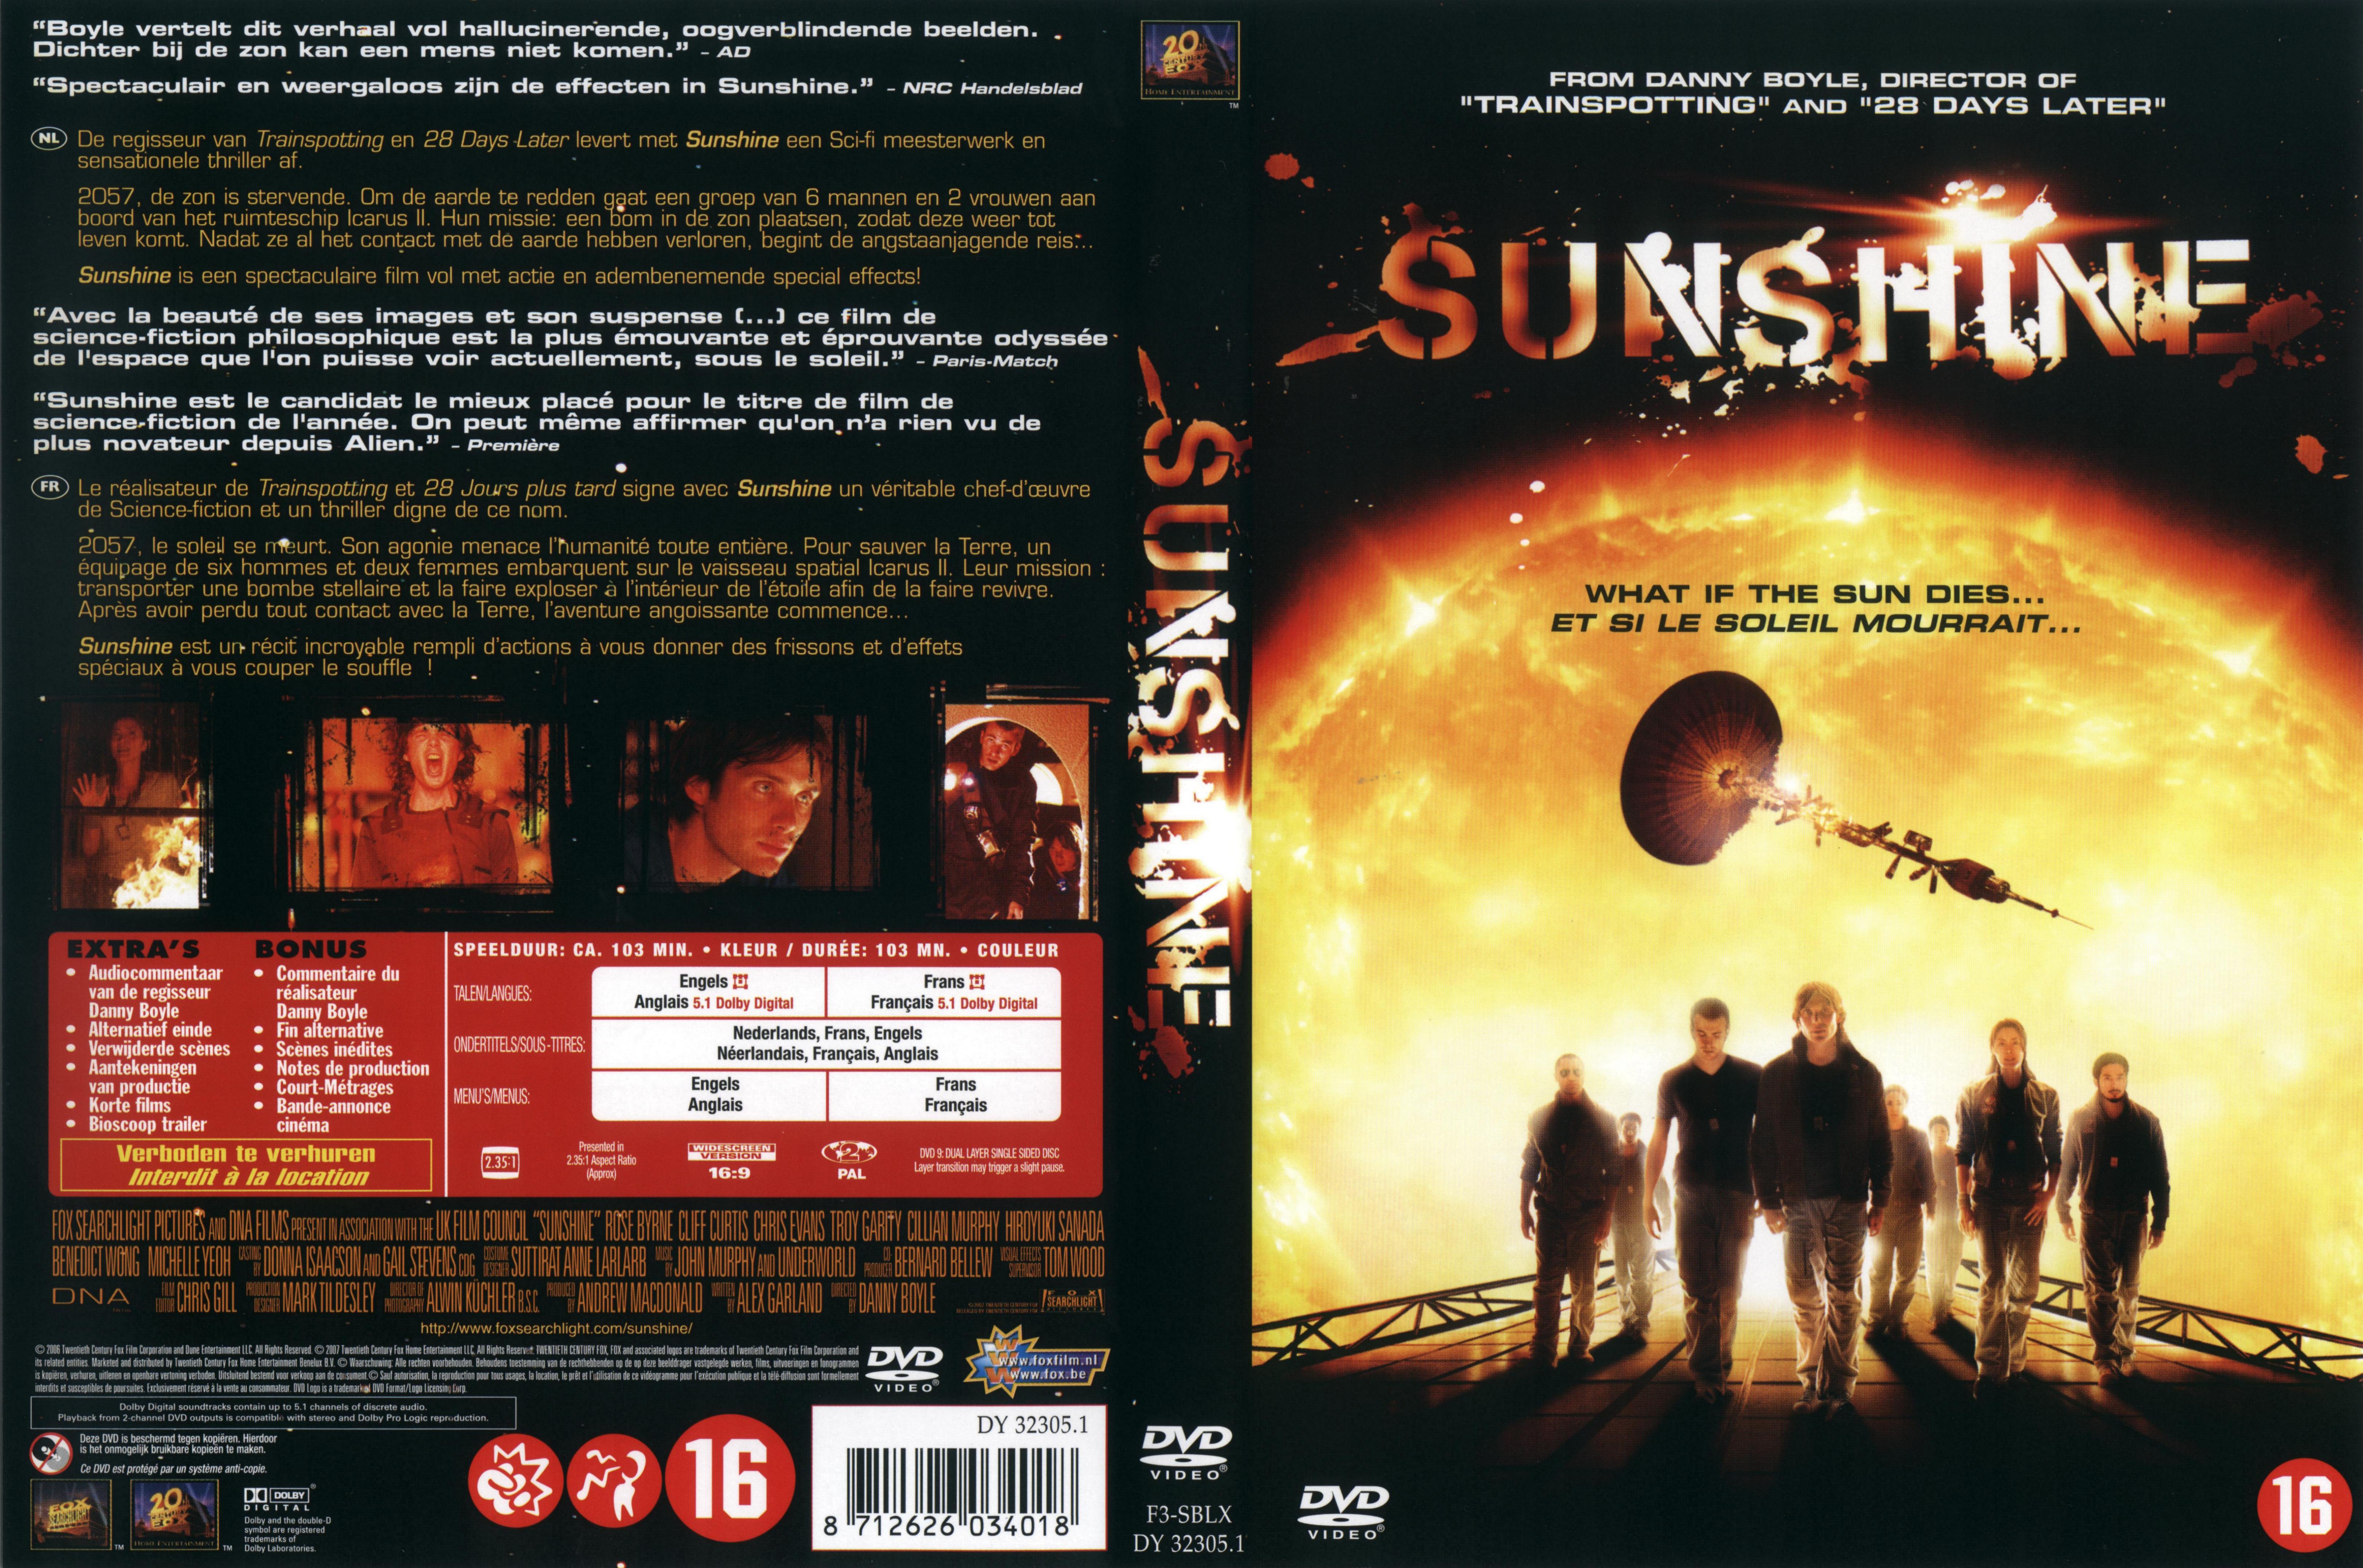 Jaquette DVD Sunshine (2007) v2